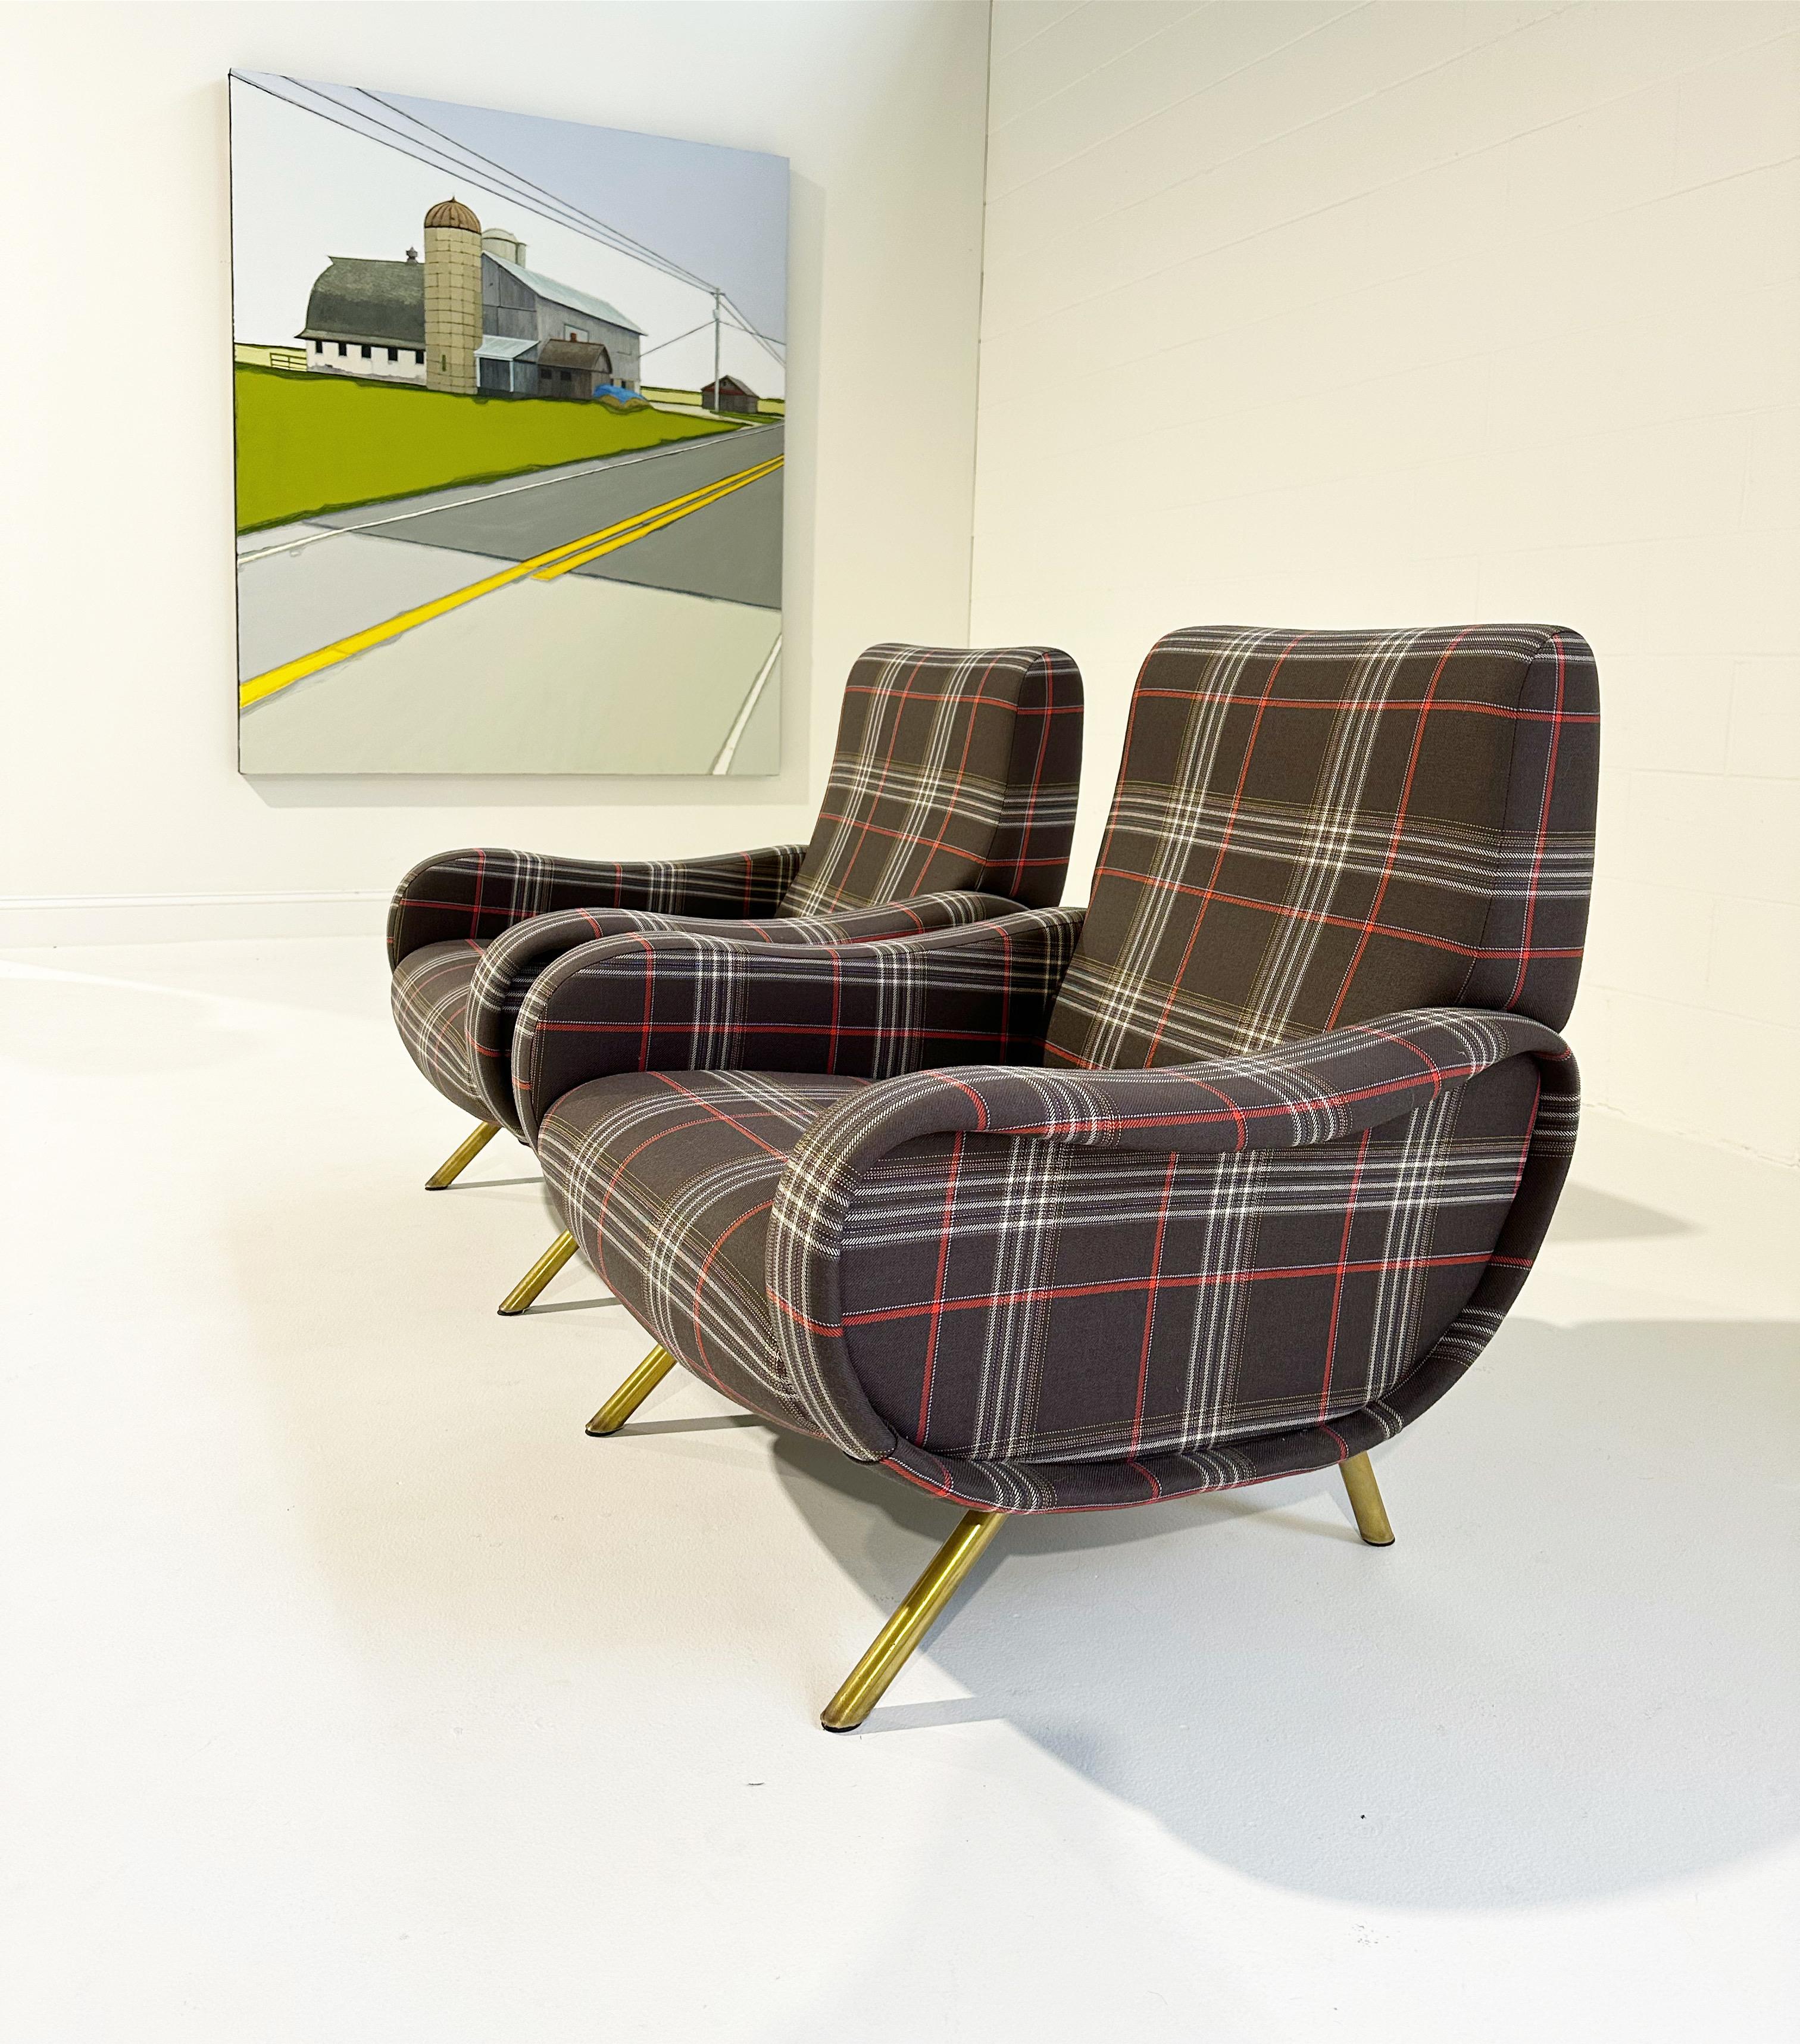 Dieses Paar Lady Lounge Chairs stammt aus einer vom Architekten Marco Zanuso entworfenen Luxusvilla in der Stadt Jesi in der Region Marche in Italien. Zanuso berücksichtigte jedes Detail des Hauses, von der Struktur bis hin zur Einrichtung im